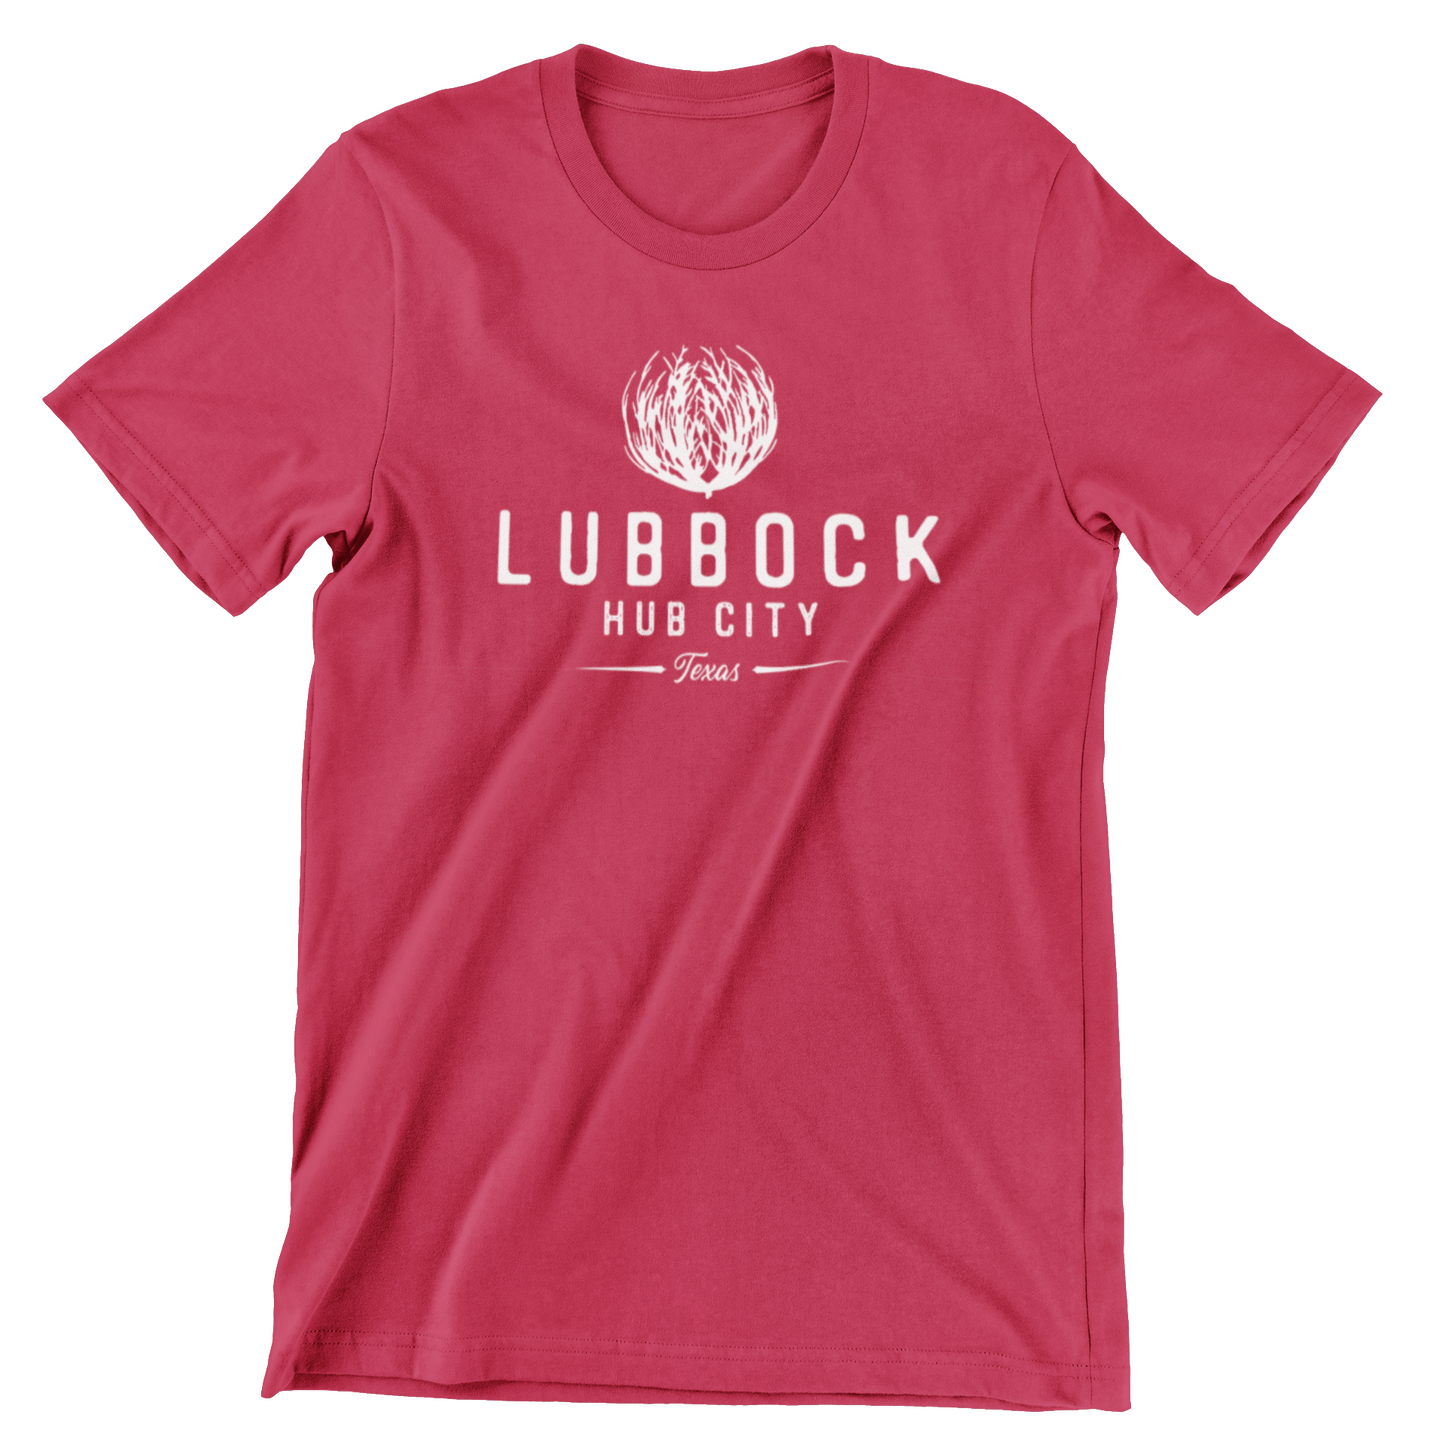 Lubbock Texas T-shirt - Hub City